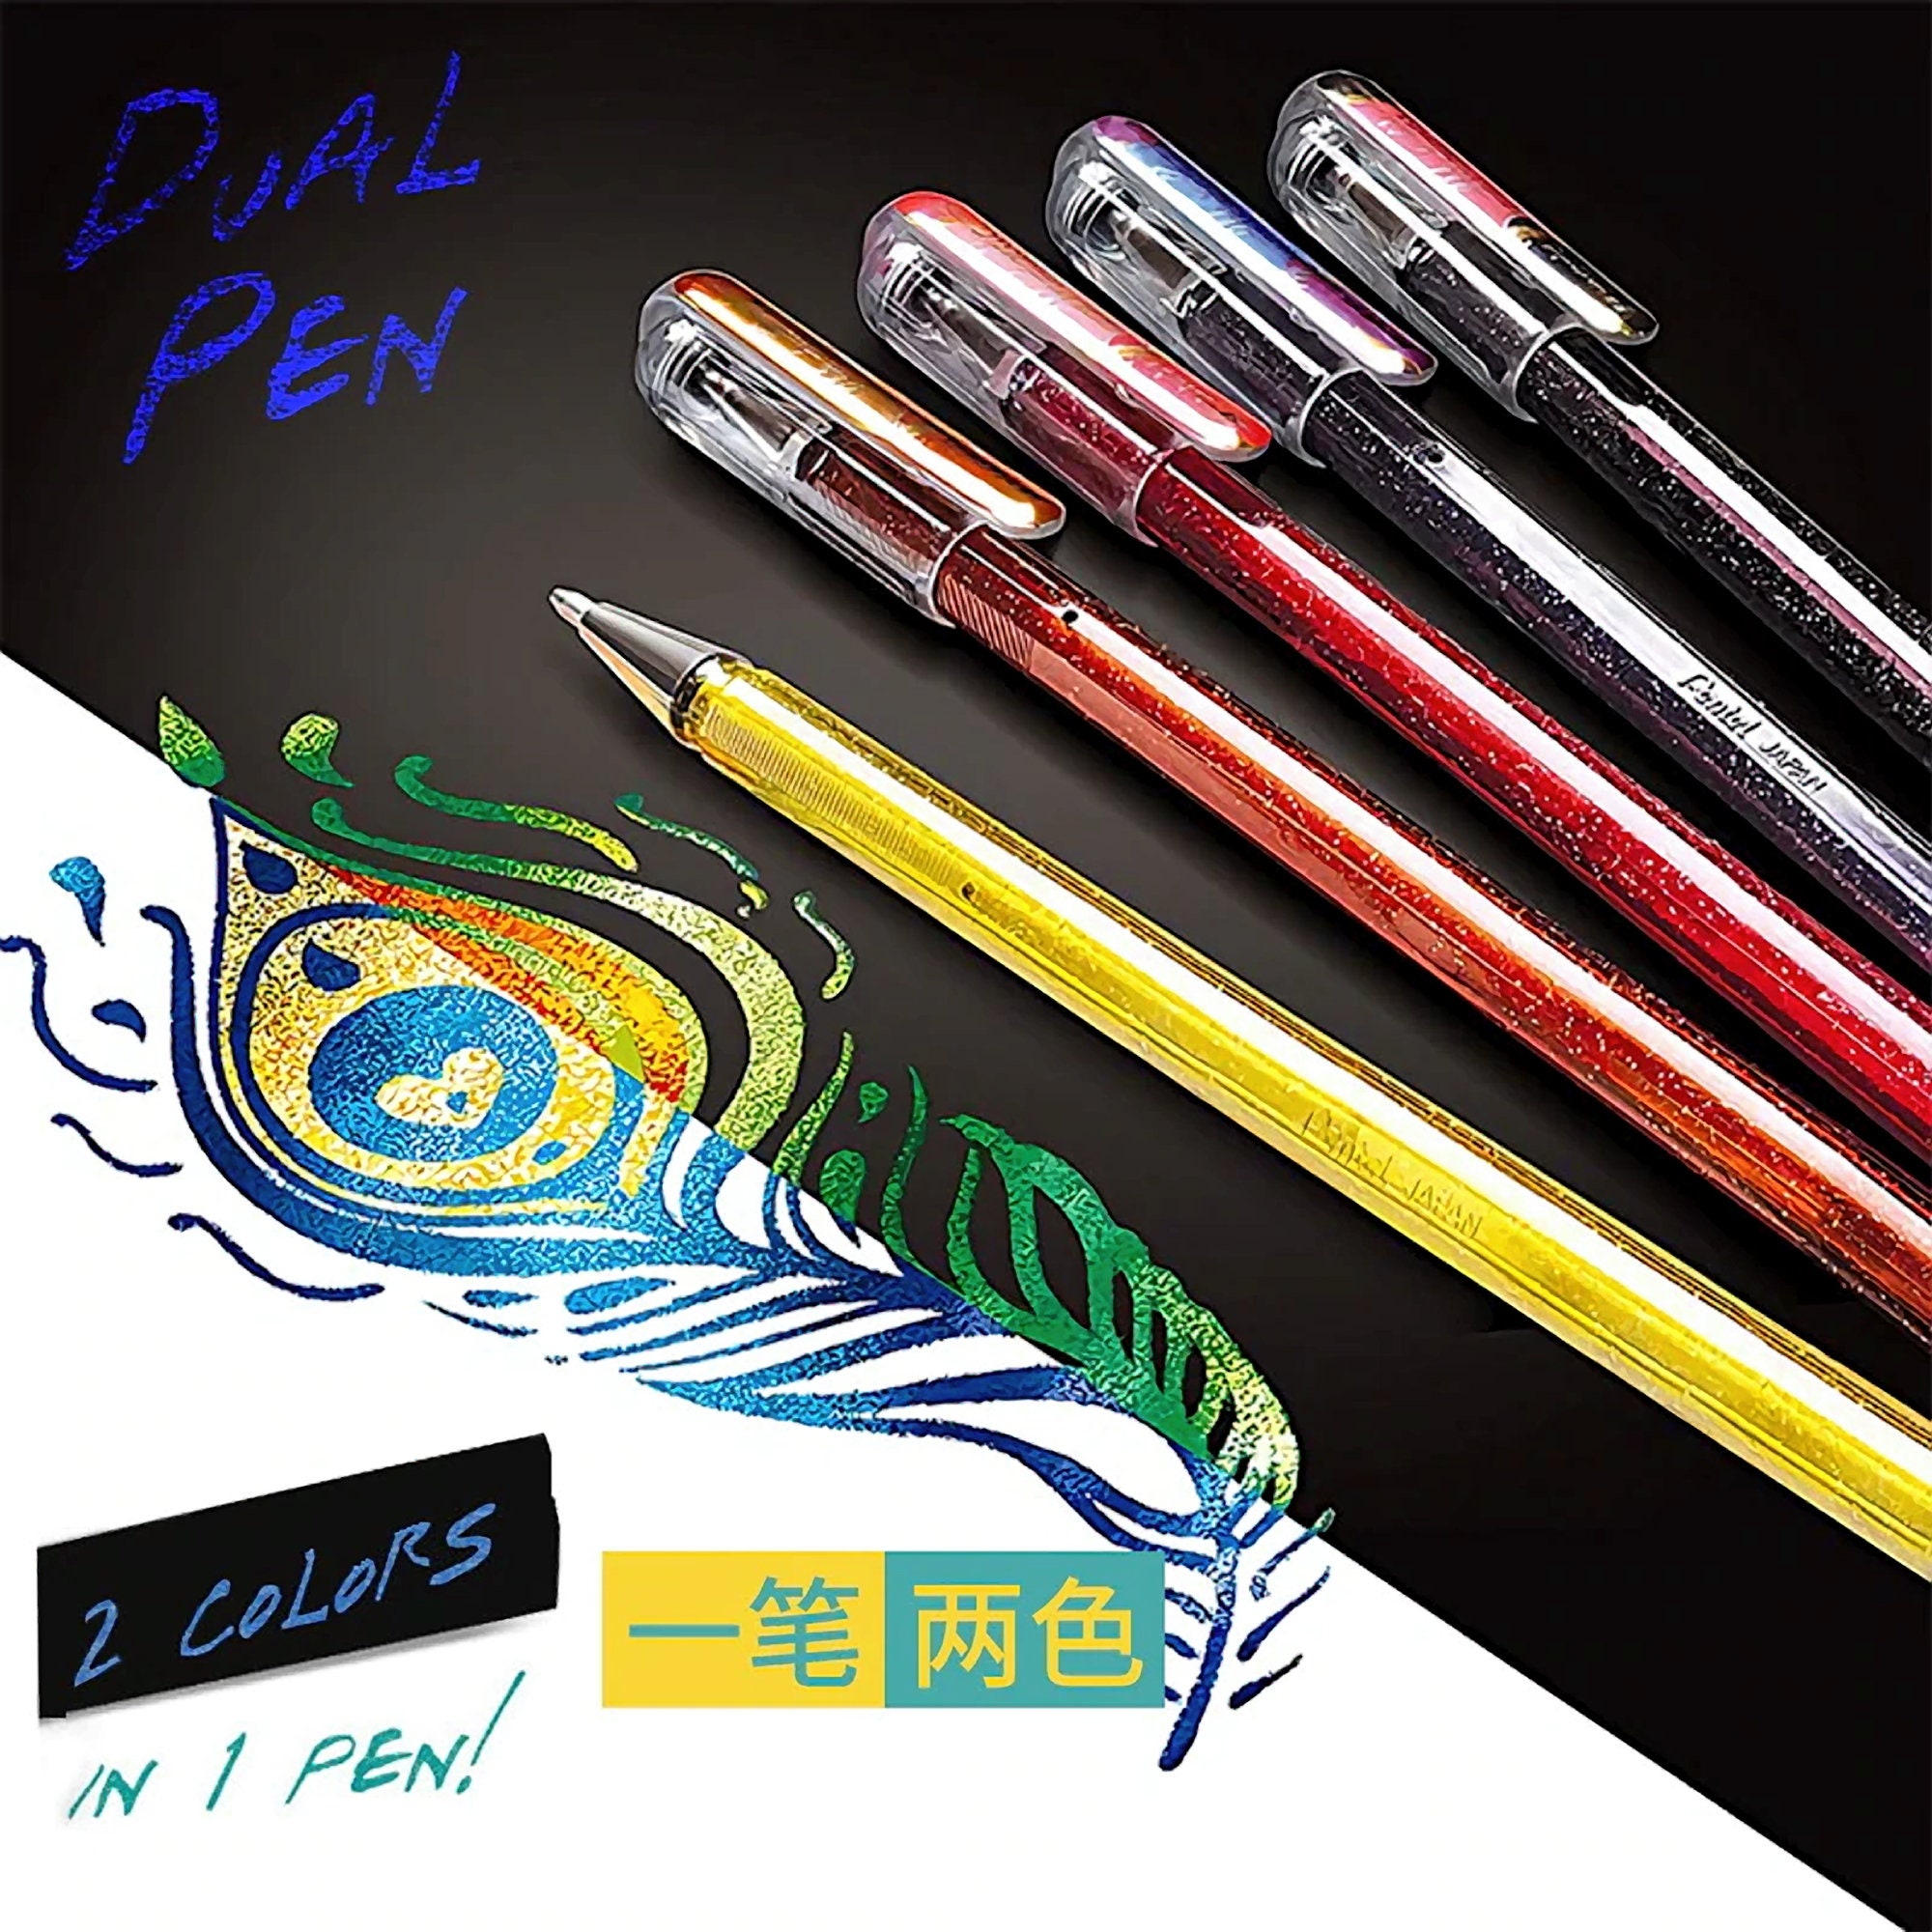 Zebra Pen bLen Retractable Ballpoint Gel Pen, Black and White Barrel,  Medium Point, 0.7mm, Black Ink, 6-Pack with 4 Refills (41416)